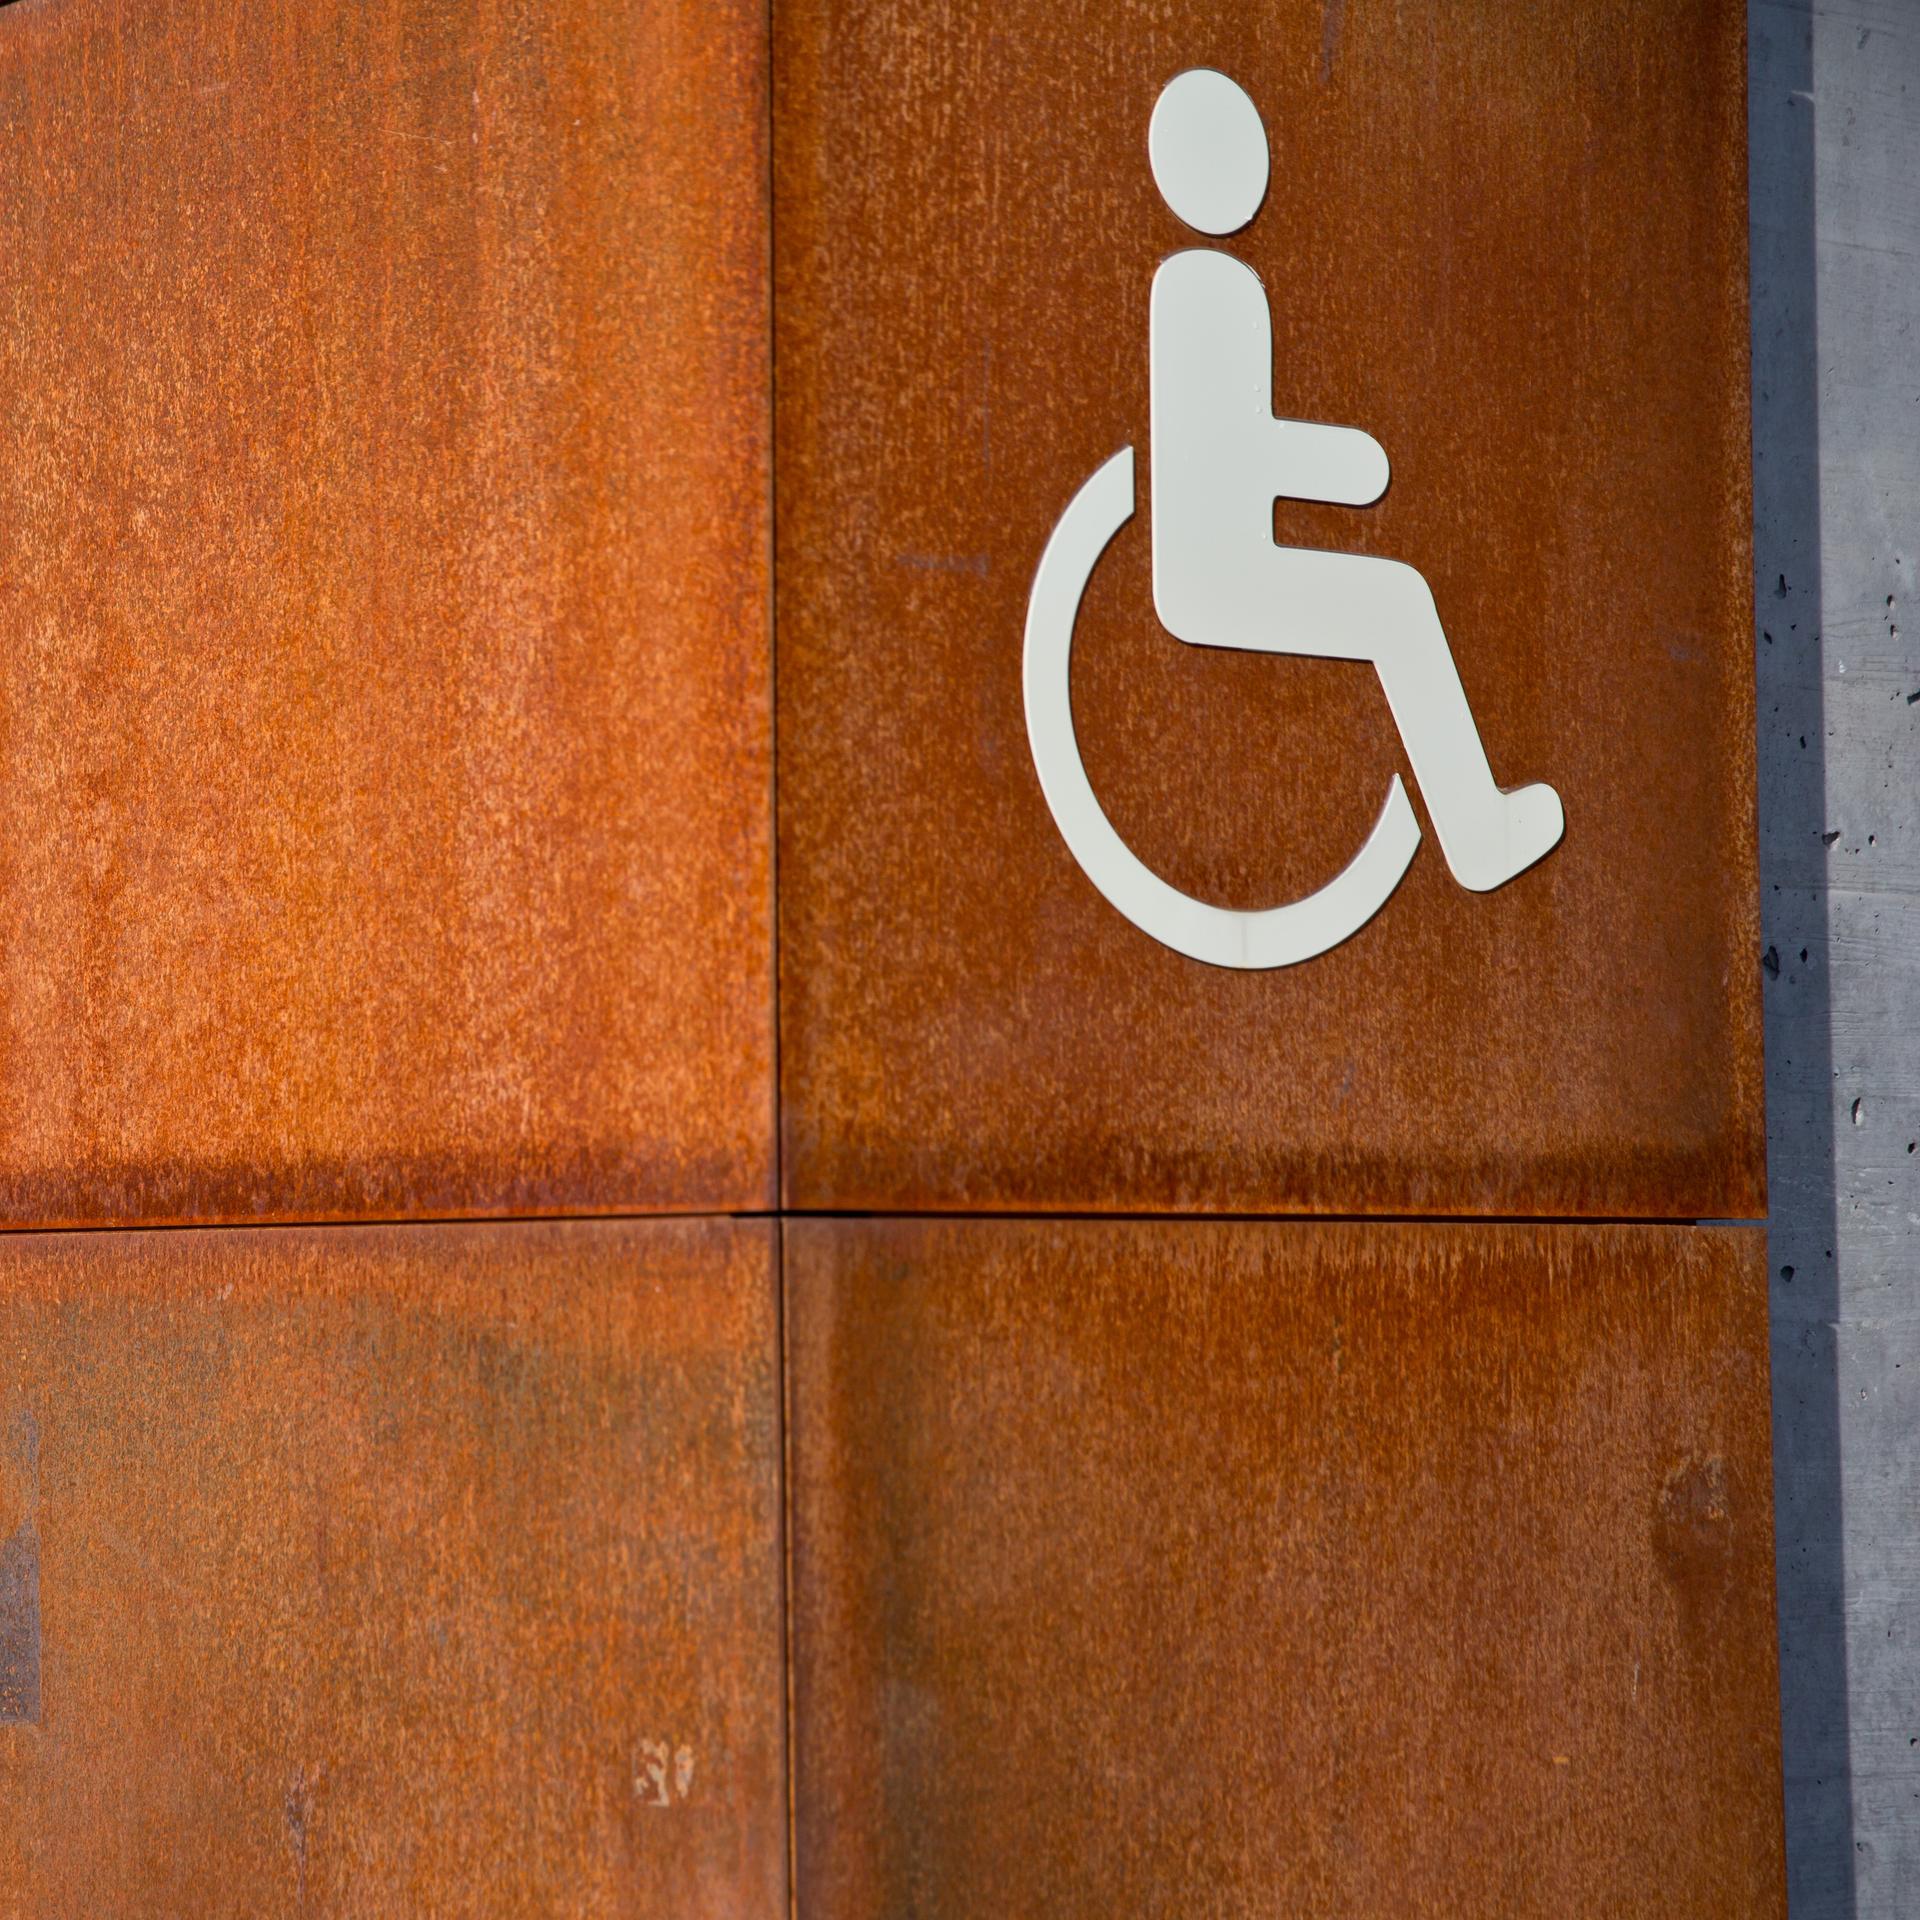 Menschen mit Behinderung in der Literatur – Protagonisten im Rollstuhl